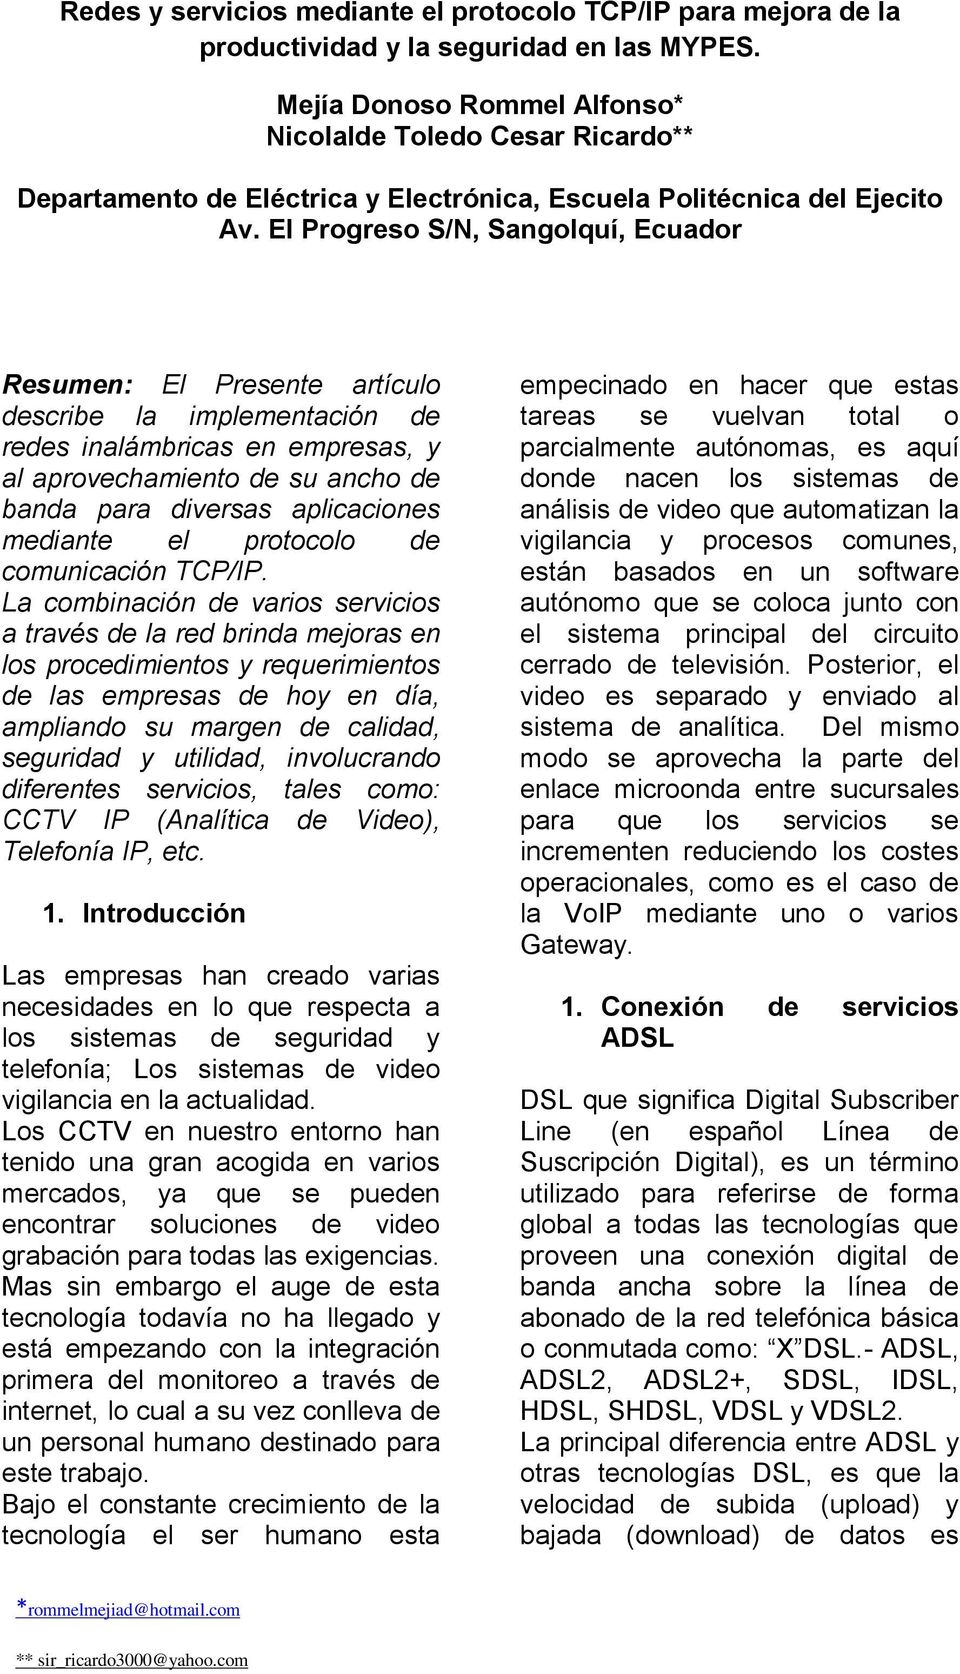 El Progreso S/N, Sangolquí, Ecuador Resumen: El Presente artículo describe la implementación de redes inalámbricas en empresas, y al aprovechamiento de su ancho de banda para diversas aplicaciones